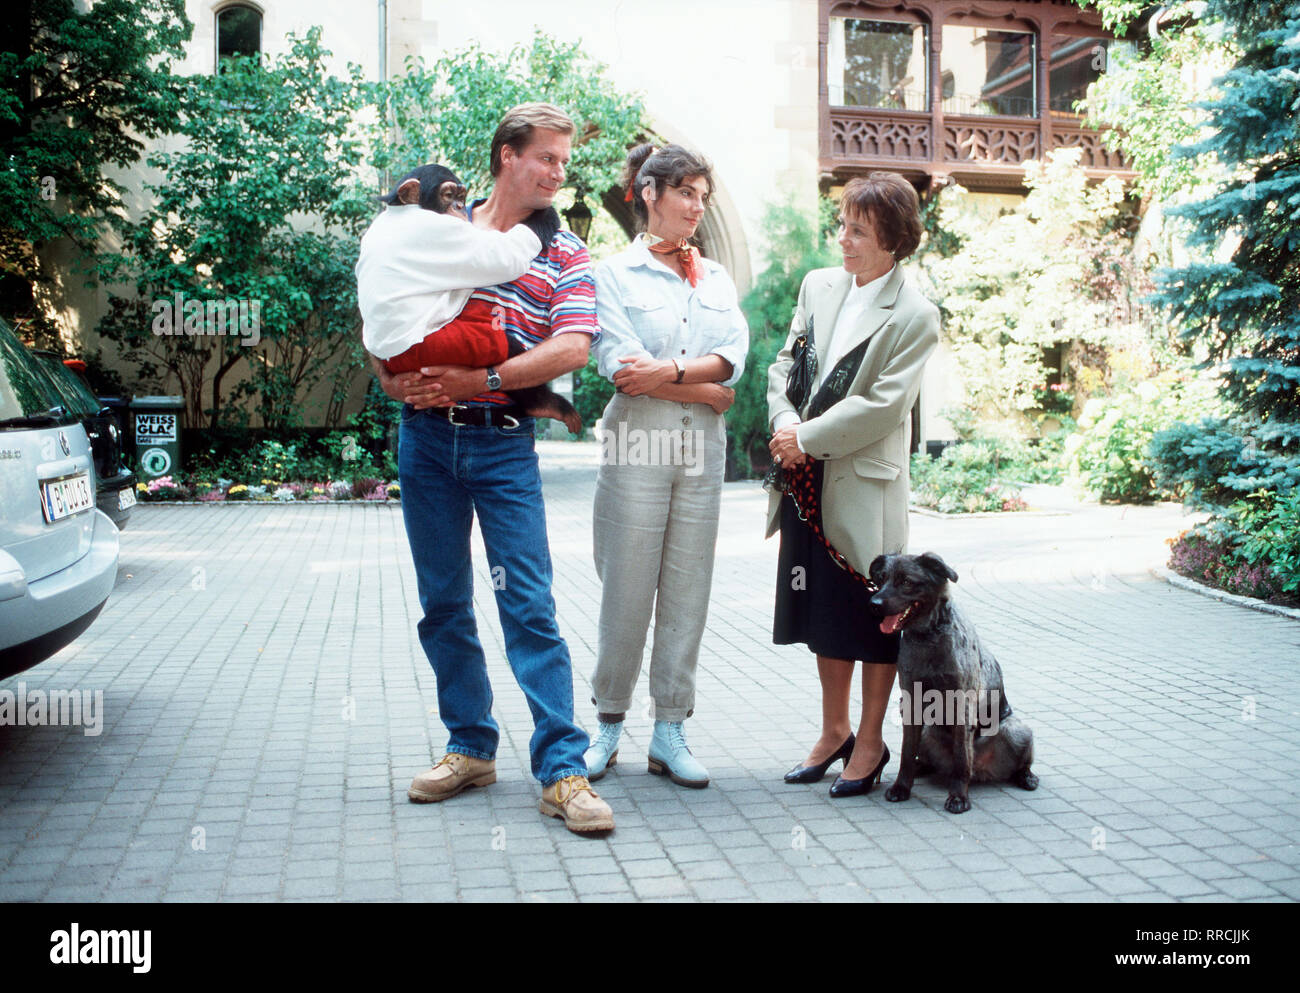 Unser Charly / Folge: Charly, der Schatzsucher / Frau Kessler (CAROLA EBELING, r.) holt ARKO, den Hund des verstorbenen Herrn Paulsen, zu sich. Max (RALF LINDERMANN), Michaela (KARIN KIENZER) und CHARLY freuen sich mit den beiden. / V / , 18DFAcharly / Überschrift: UNSER CHARLY / D 1999 Stock Photo